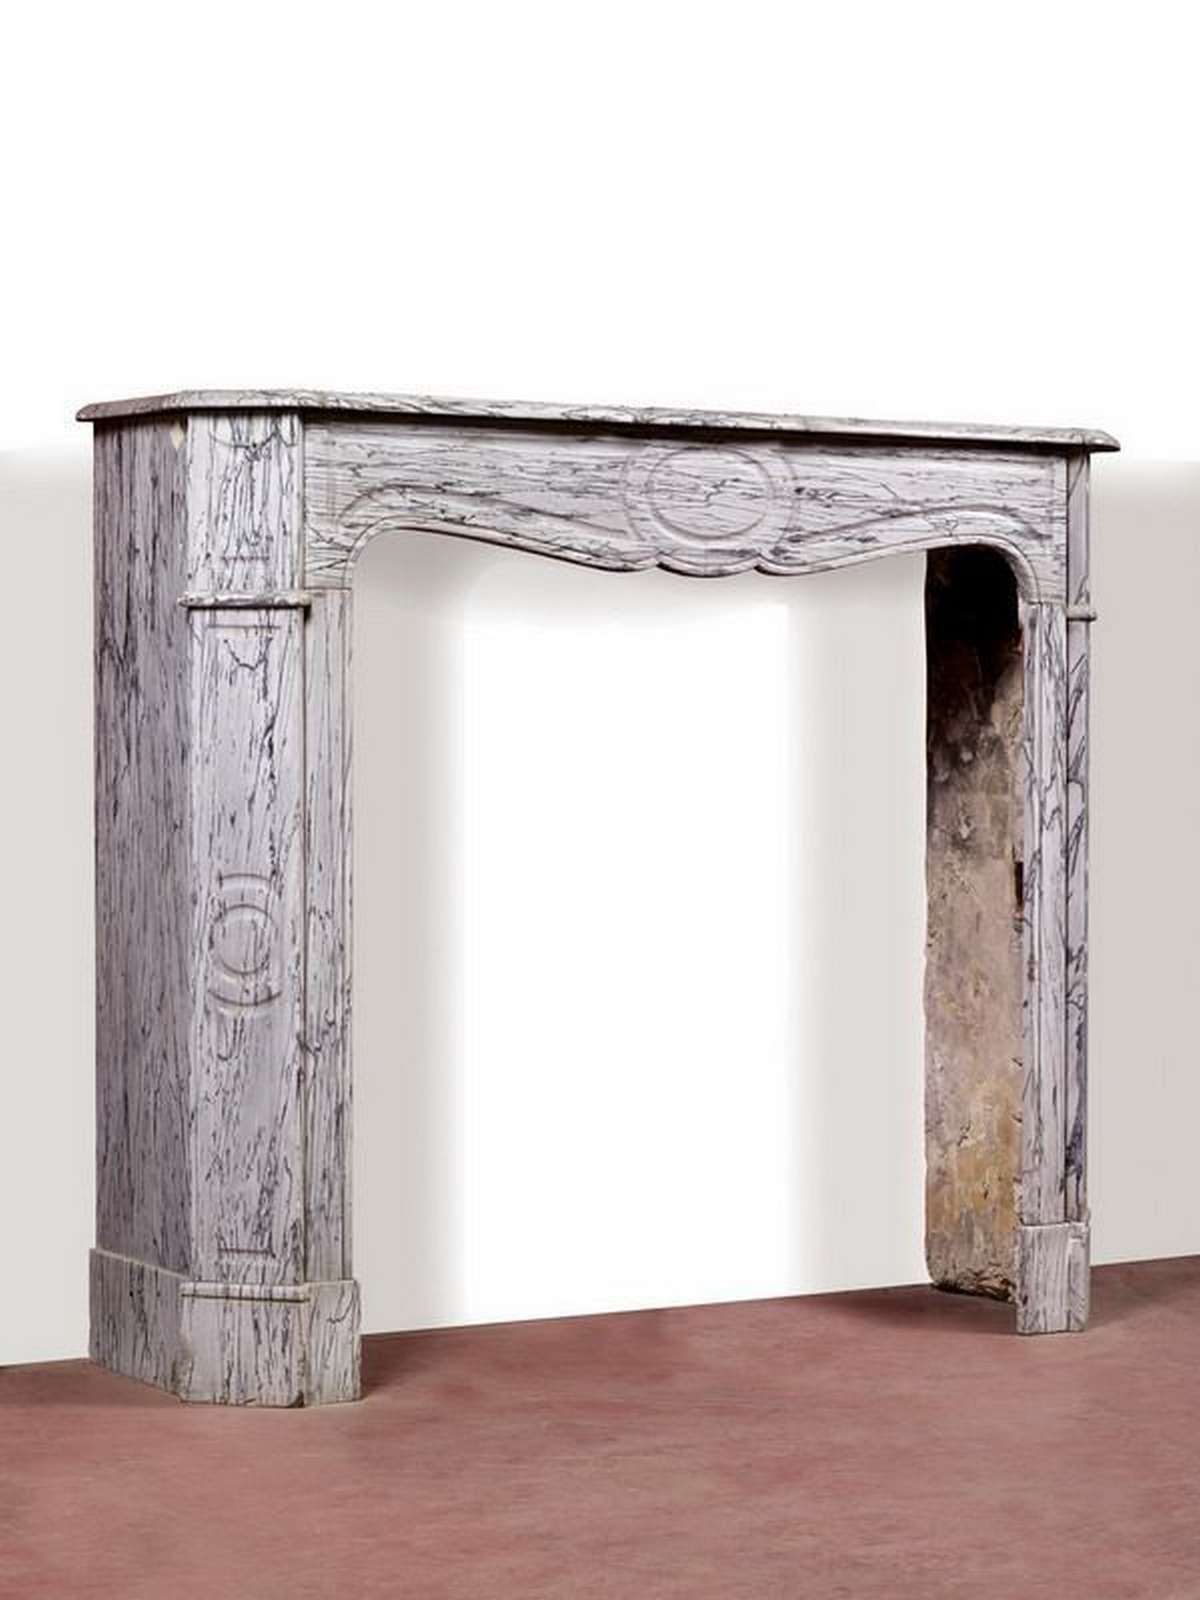 Camino in marmo Pompadeur, cm. 148x100 h. Epoca 1800 - Camini Antichi - Camini e Accessori - Prodotti - Antichità Fiorillo